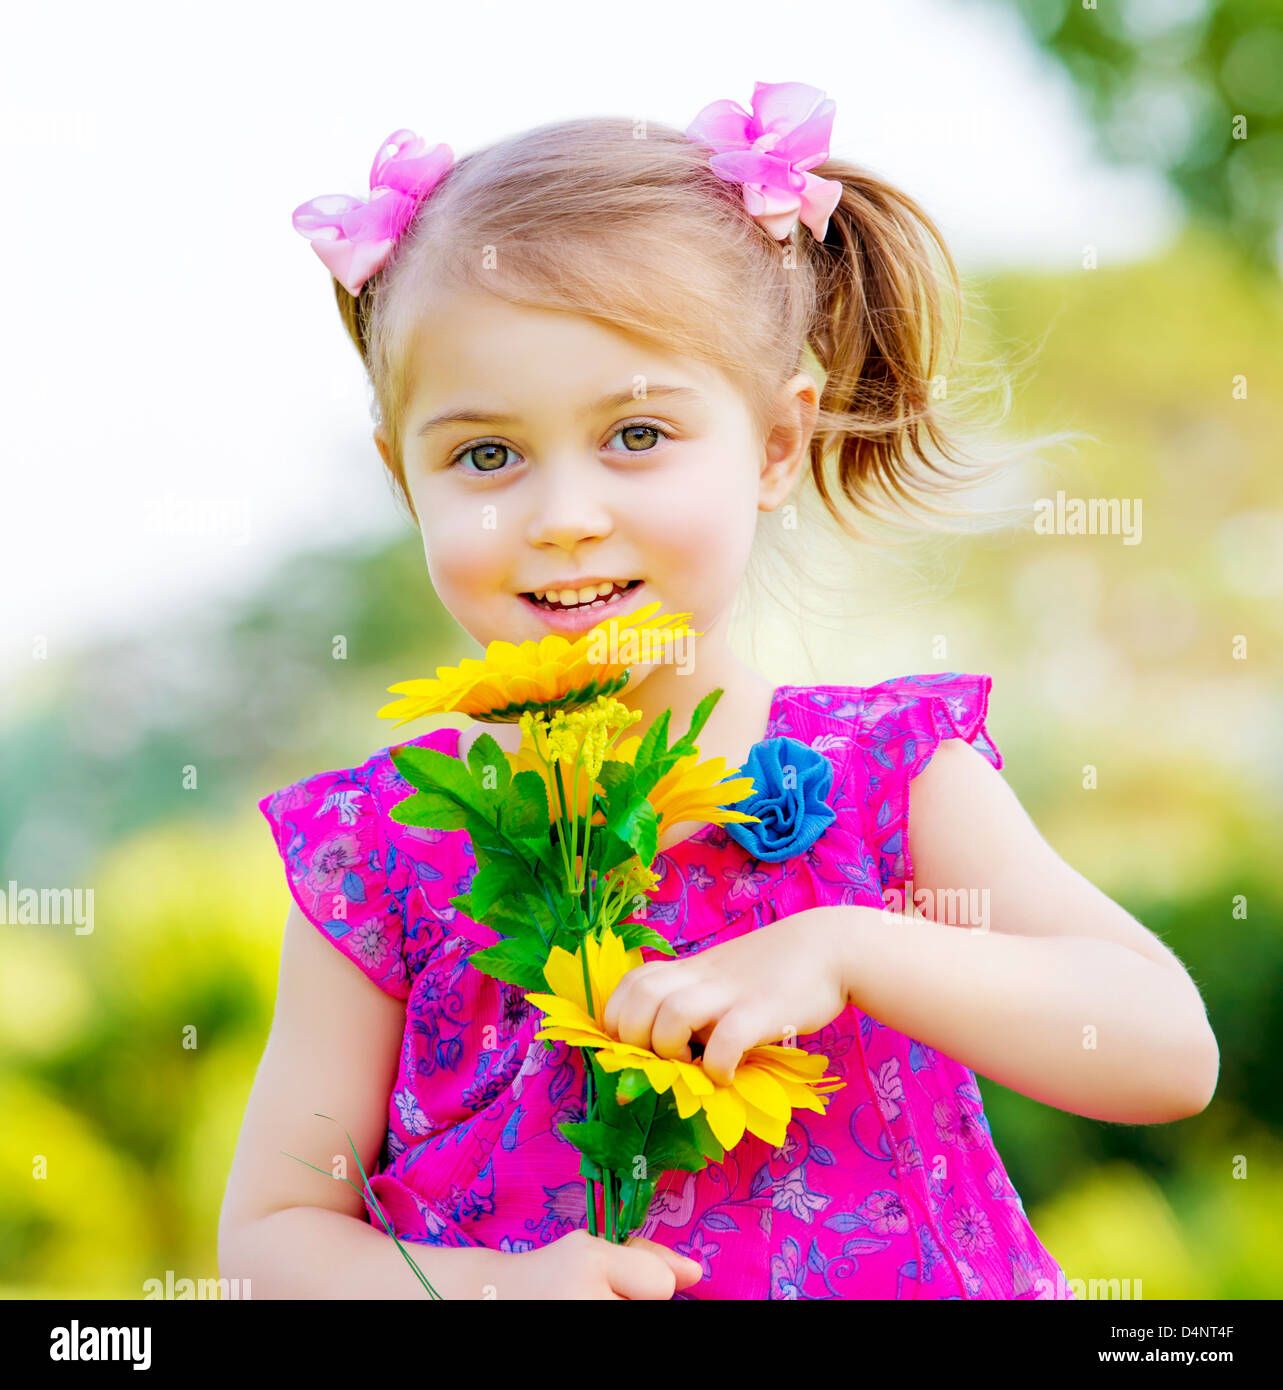 Glückliches Babymädchen spielen im Freien, niedlichen Kind hält frische Sonnenblume Blumen Kind Spaß im Sommerpark Stockfoto